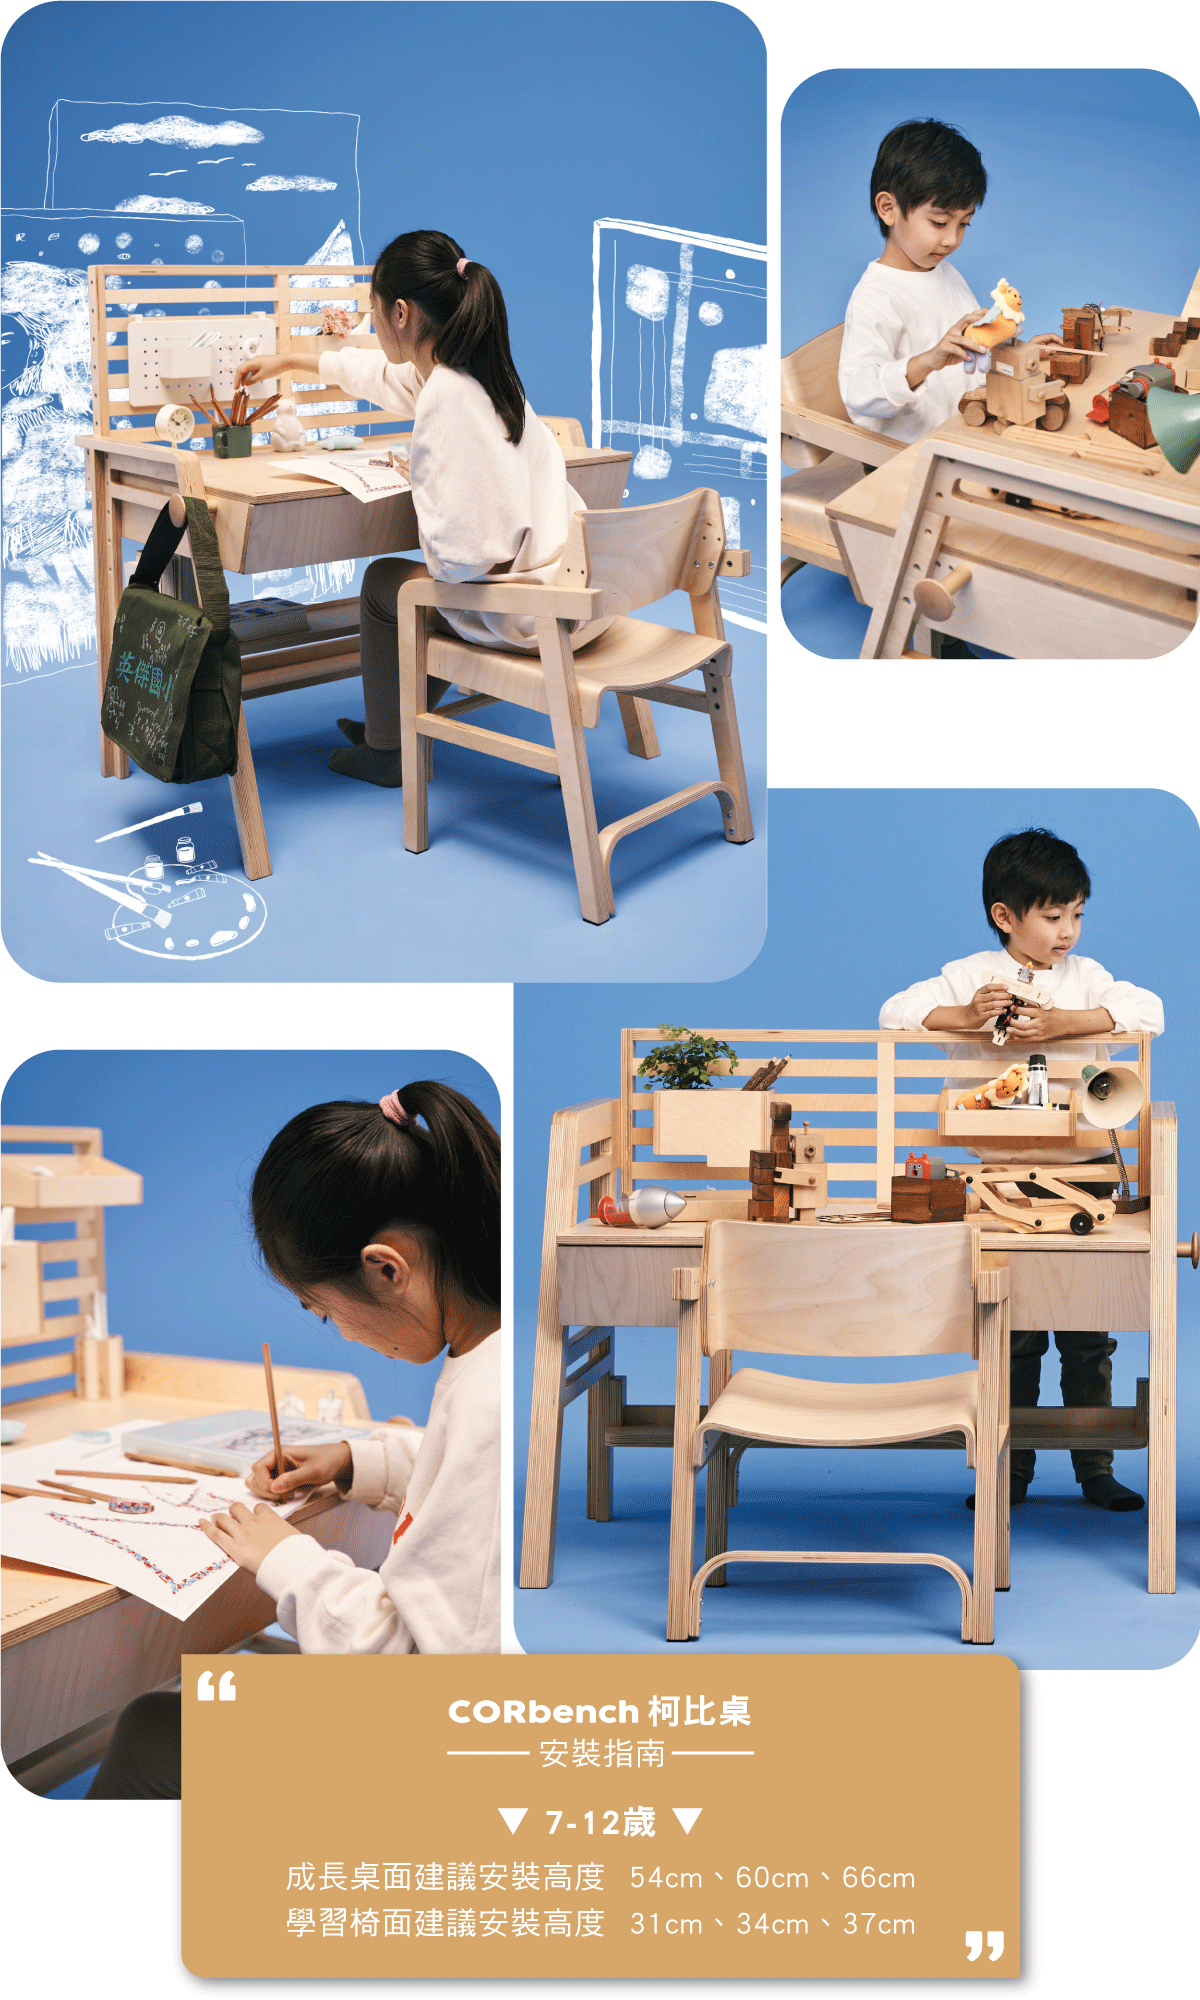 柯比桌 - 專為學齡前兒童設計的成長型書桌09